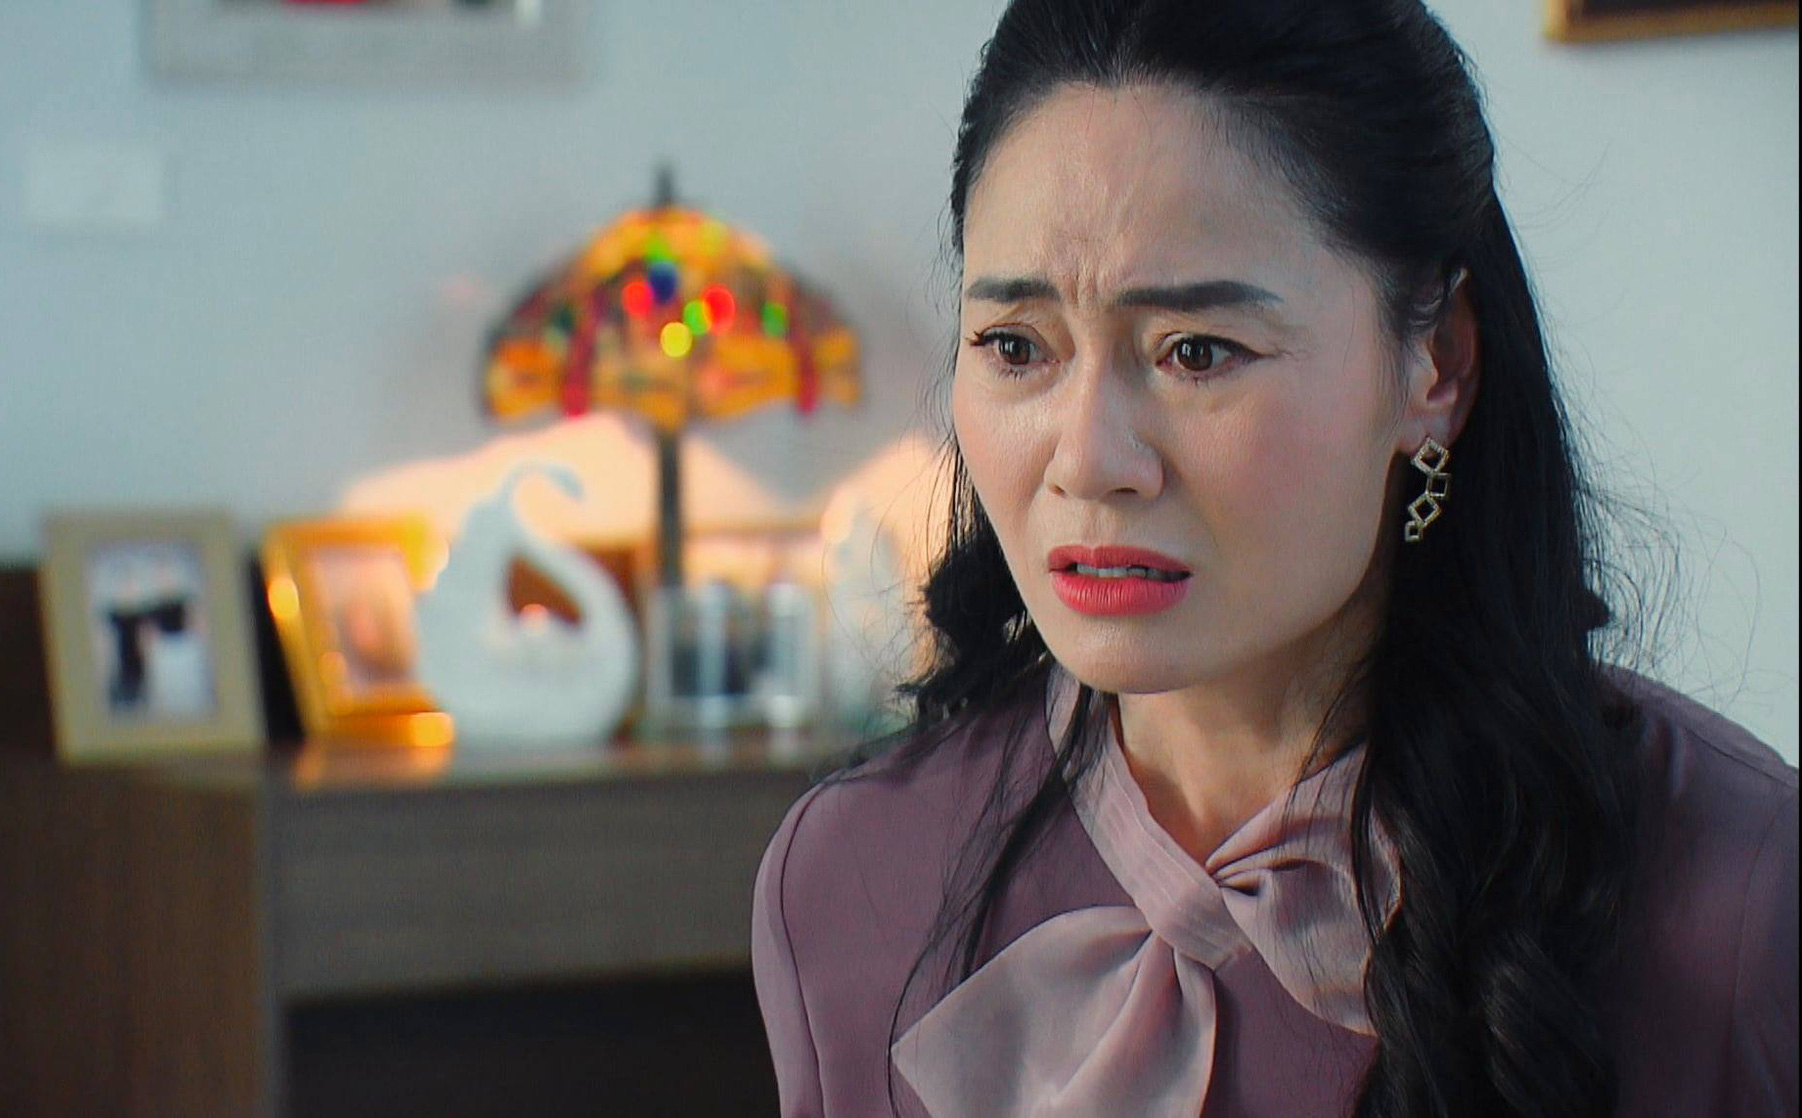 "Hương vị tình thân" tập 32 phần 2: Bà Xuân bất ngờ bị tố lừa đảo từ thiện, yêu cầu sao kê